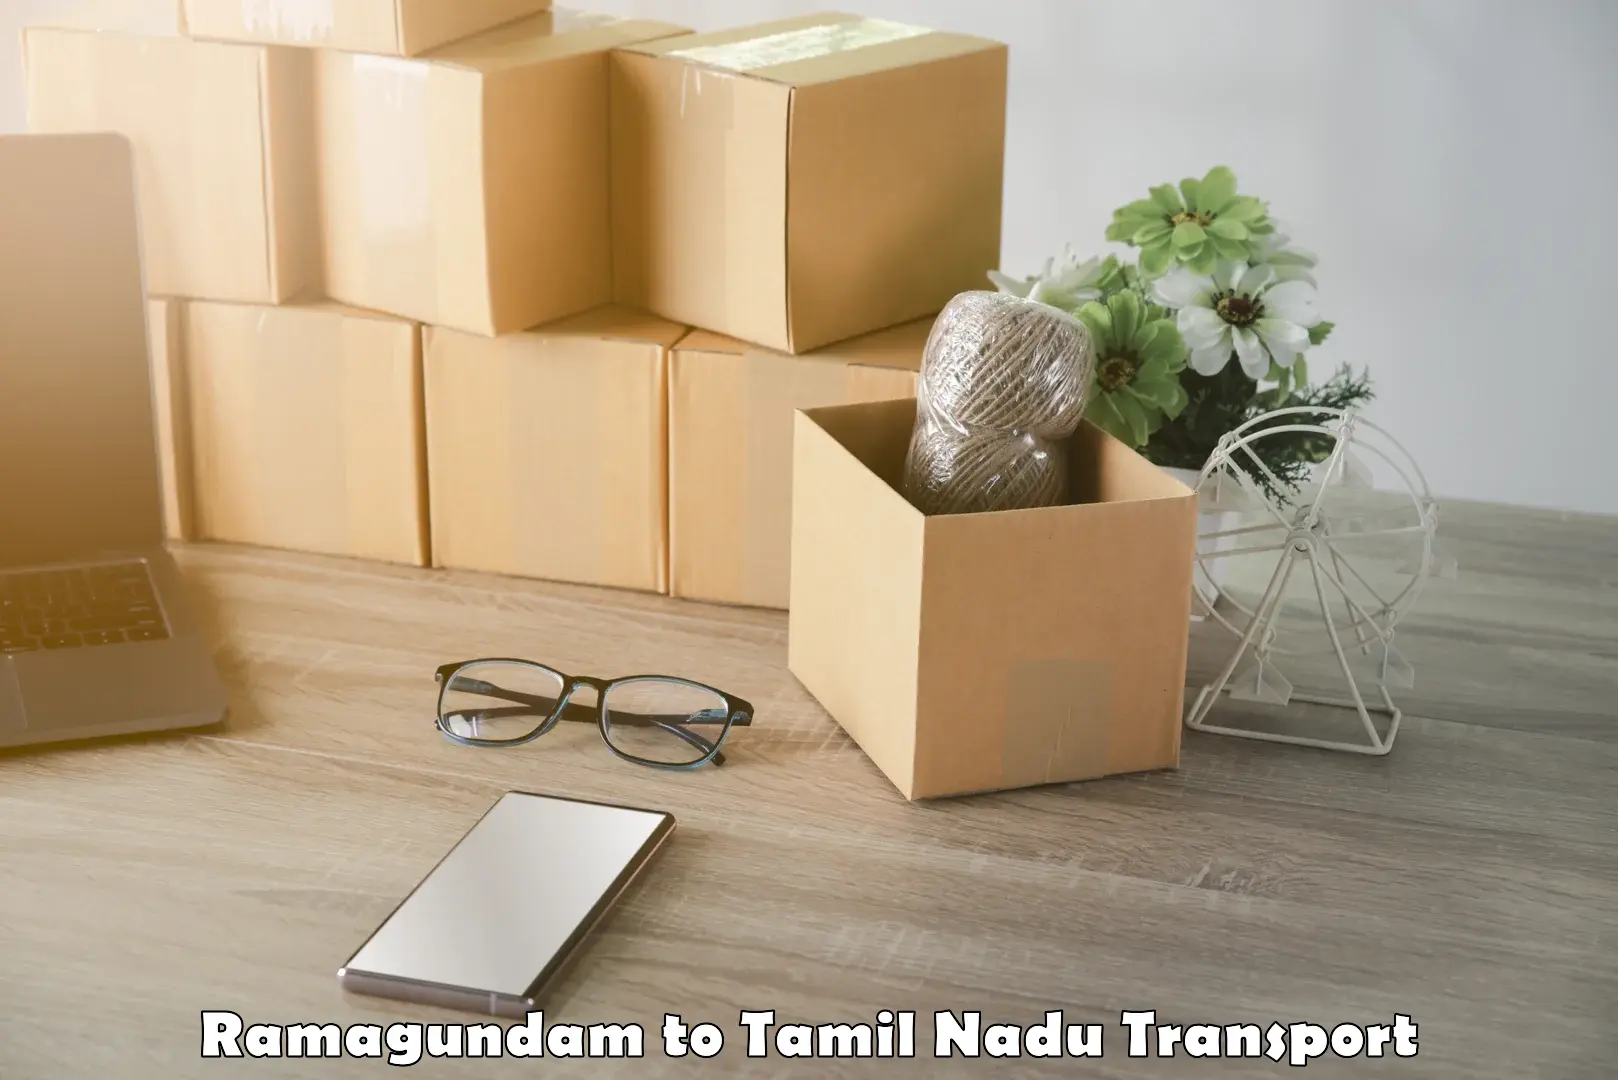 Domestic transport services Ramagundam to Tiruturaipundi